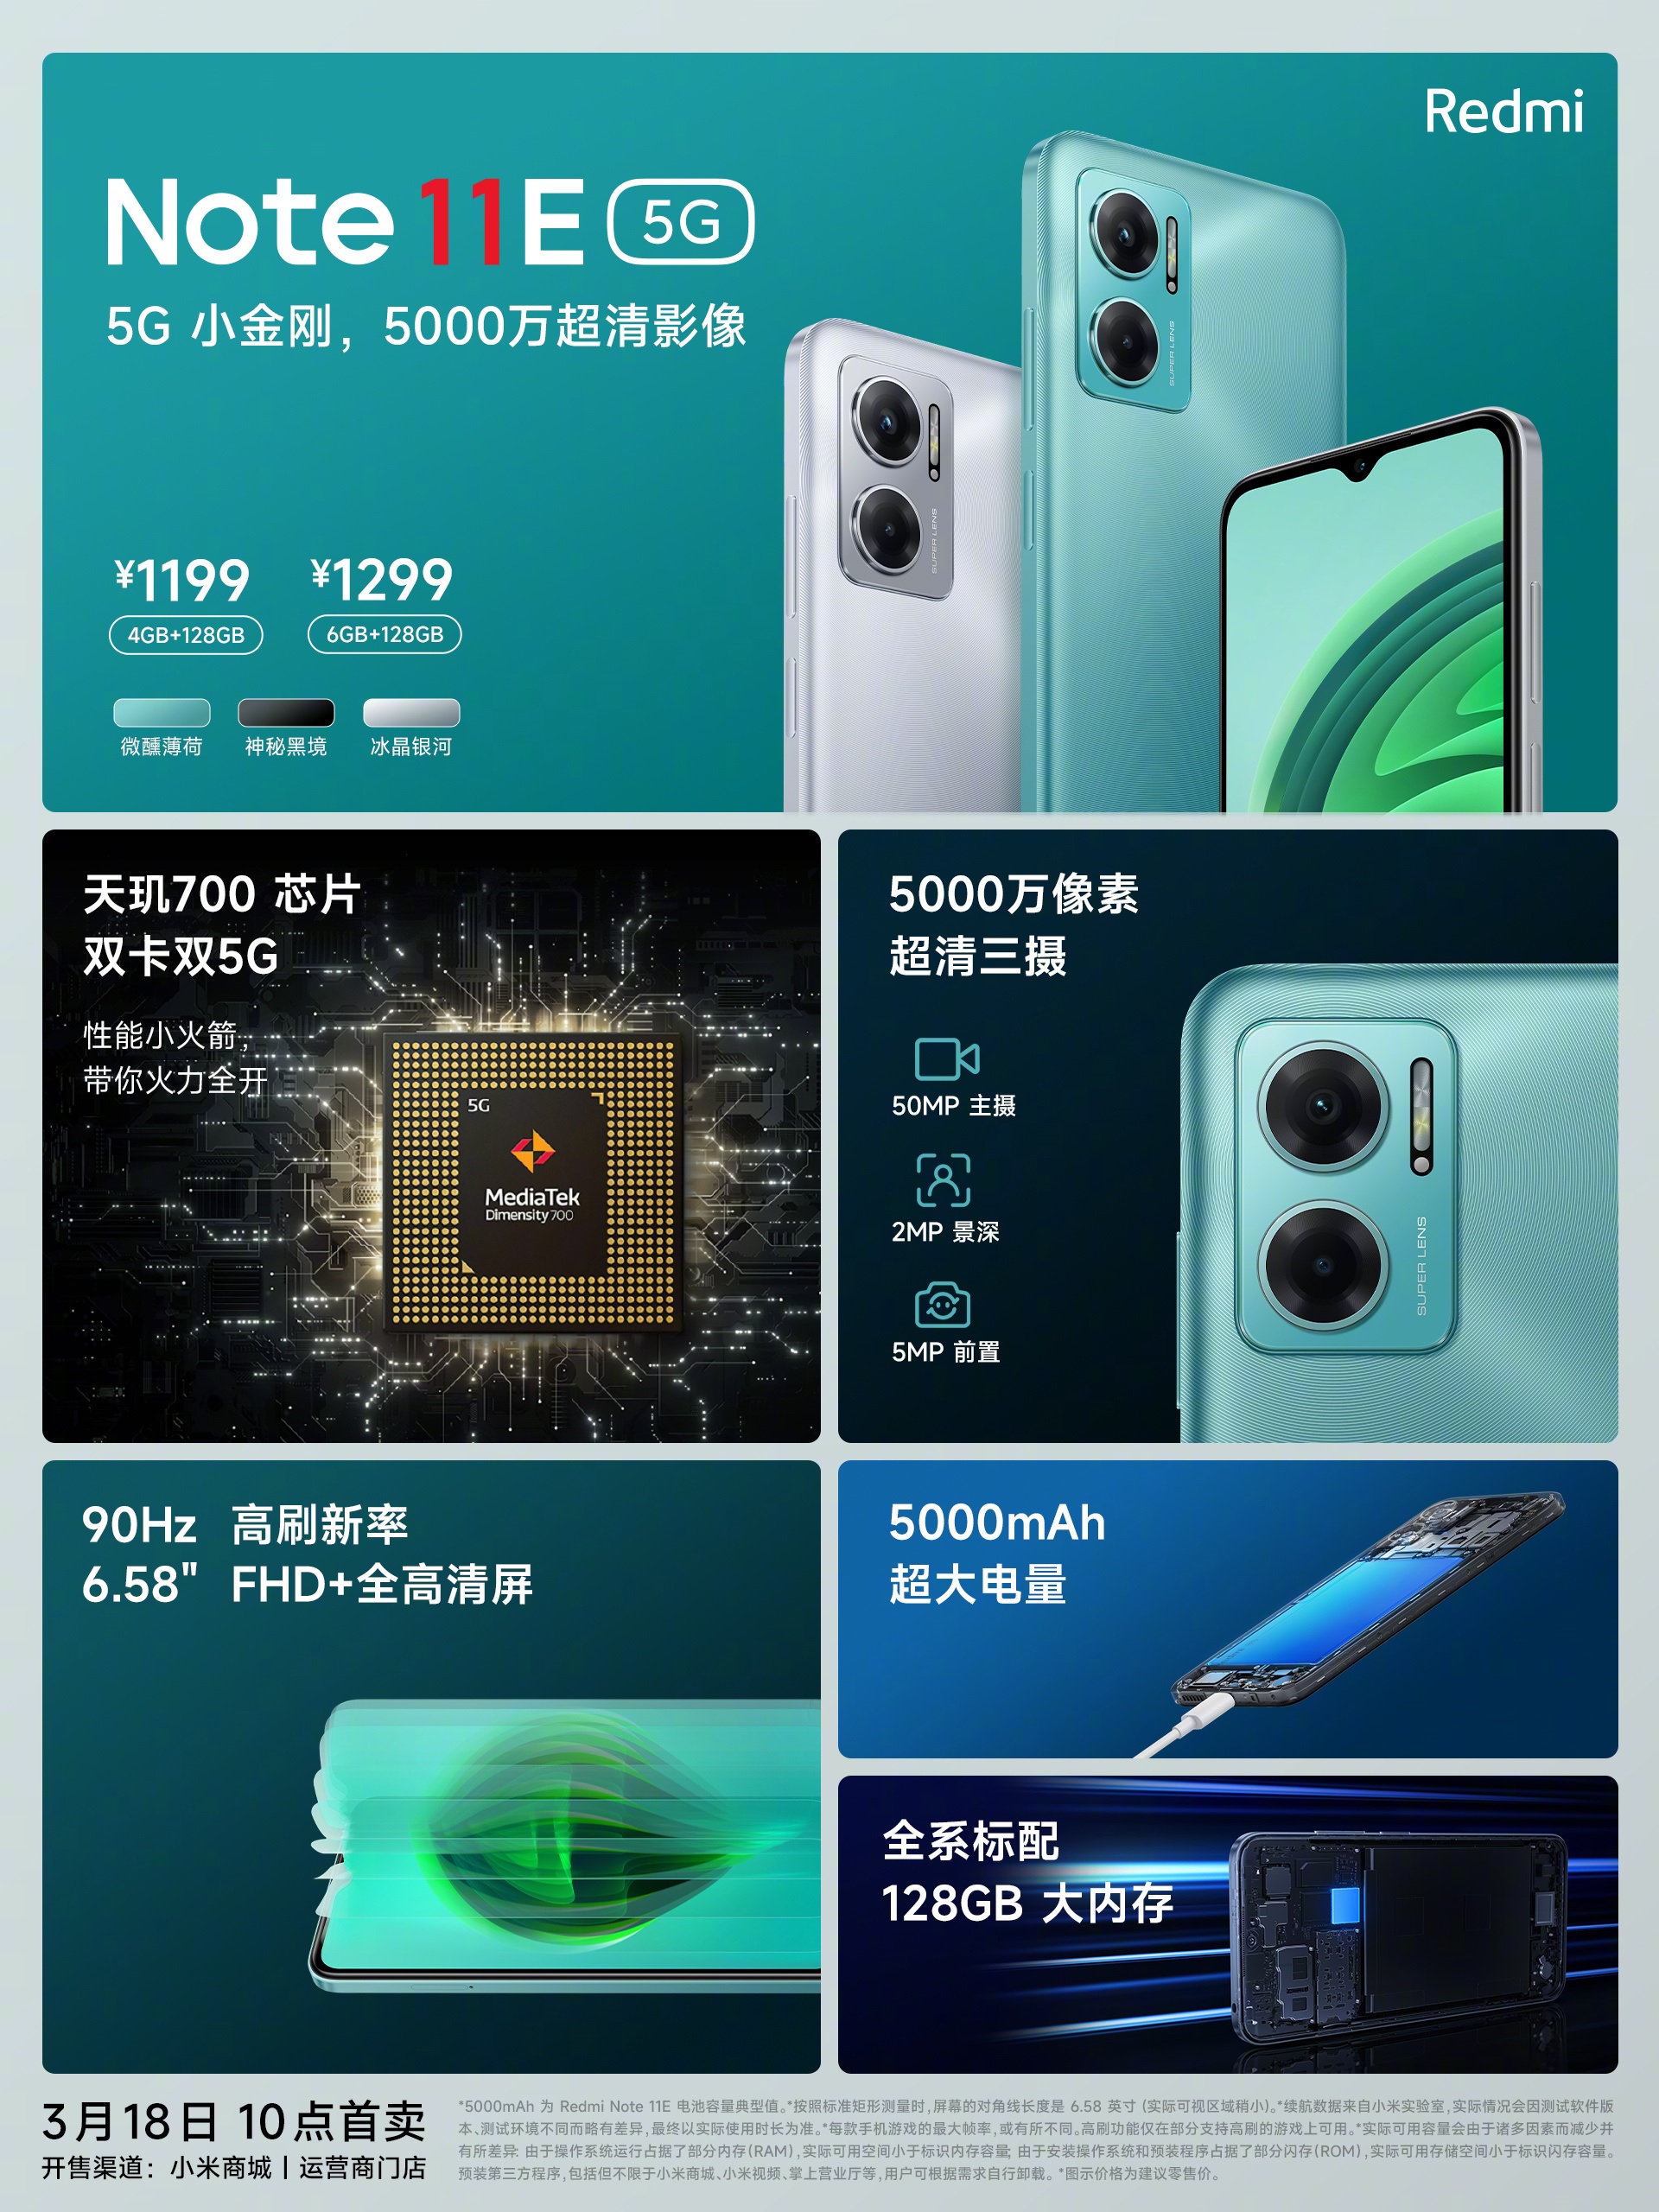 Представлен Redmi Note 11E 5G. Это бюджетник с необычным дизайном, 90-герцовым экраном и игровым процессором